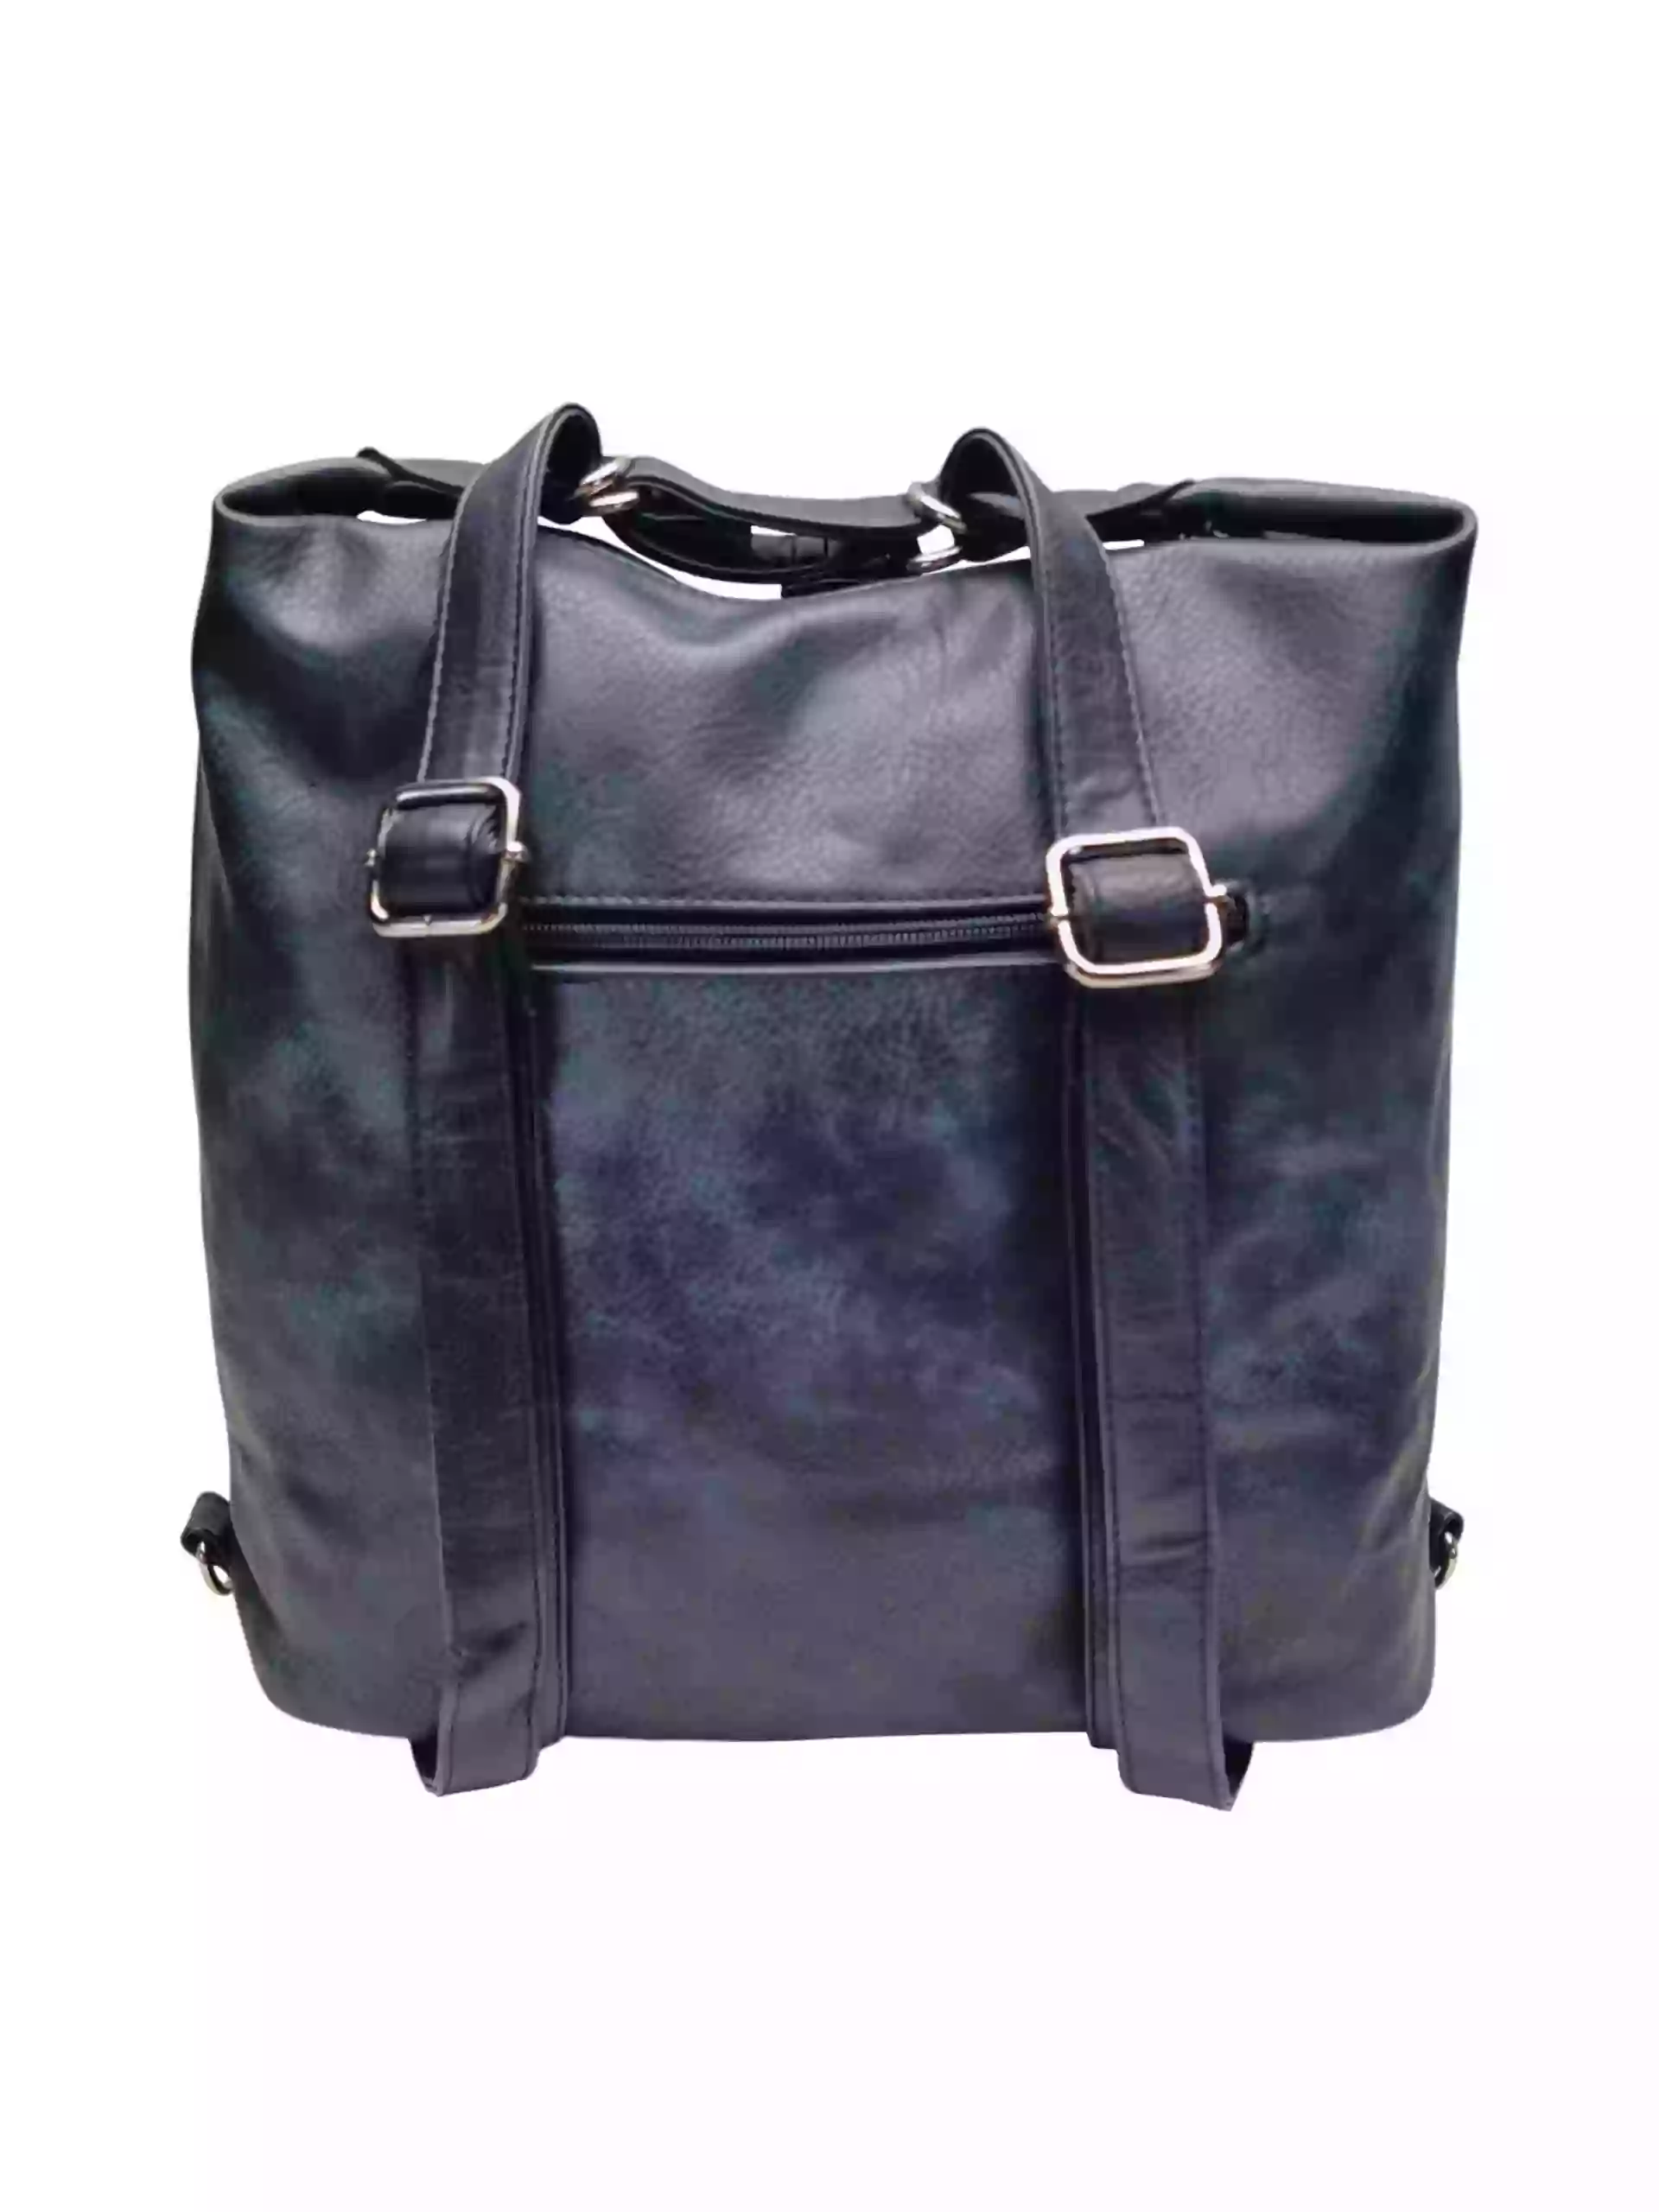 Velký tmavě modrý kabelko-batoh z eko kůže, Tapple, H18077, zadní strana kabelko-batohu 2v1 s popruhy